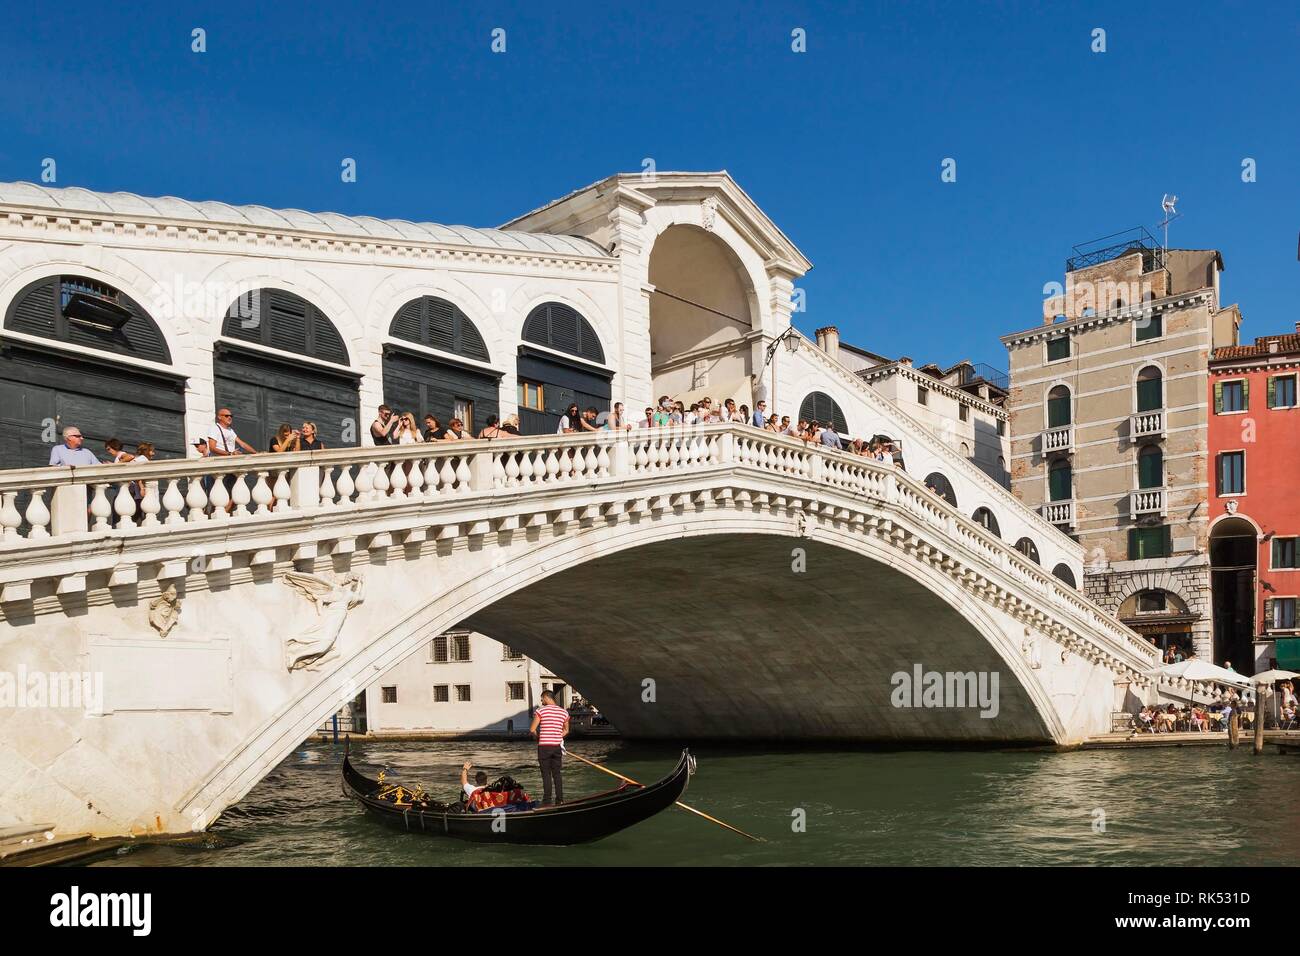 Les touristes sur le pont du Rialto sur le Grand canal en gondole traditionnelle, San Polo, Venise, Italie, Europe, Venetto Banque D'Images